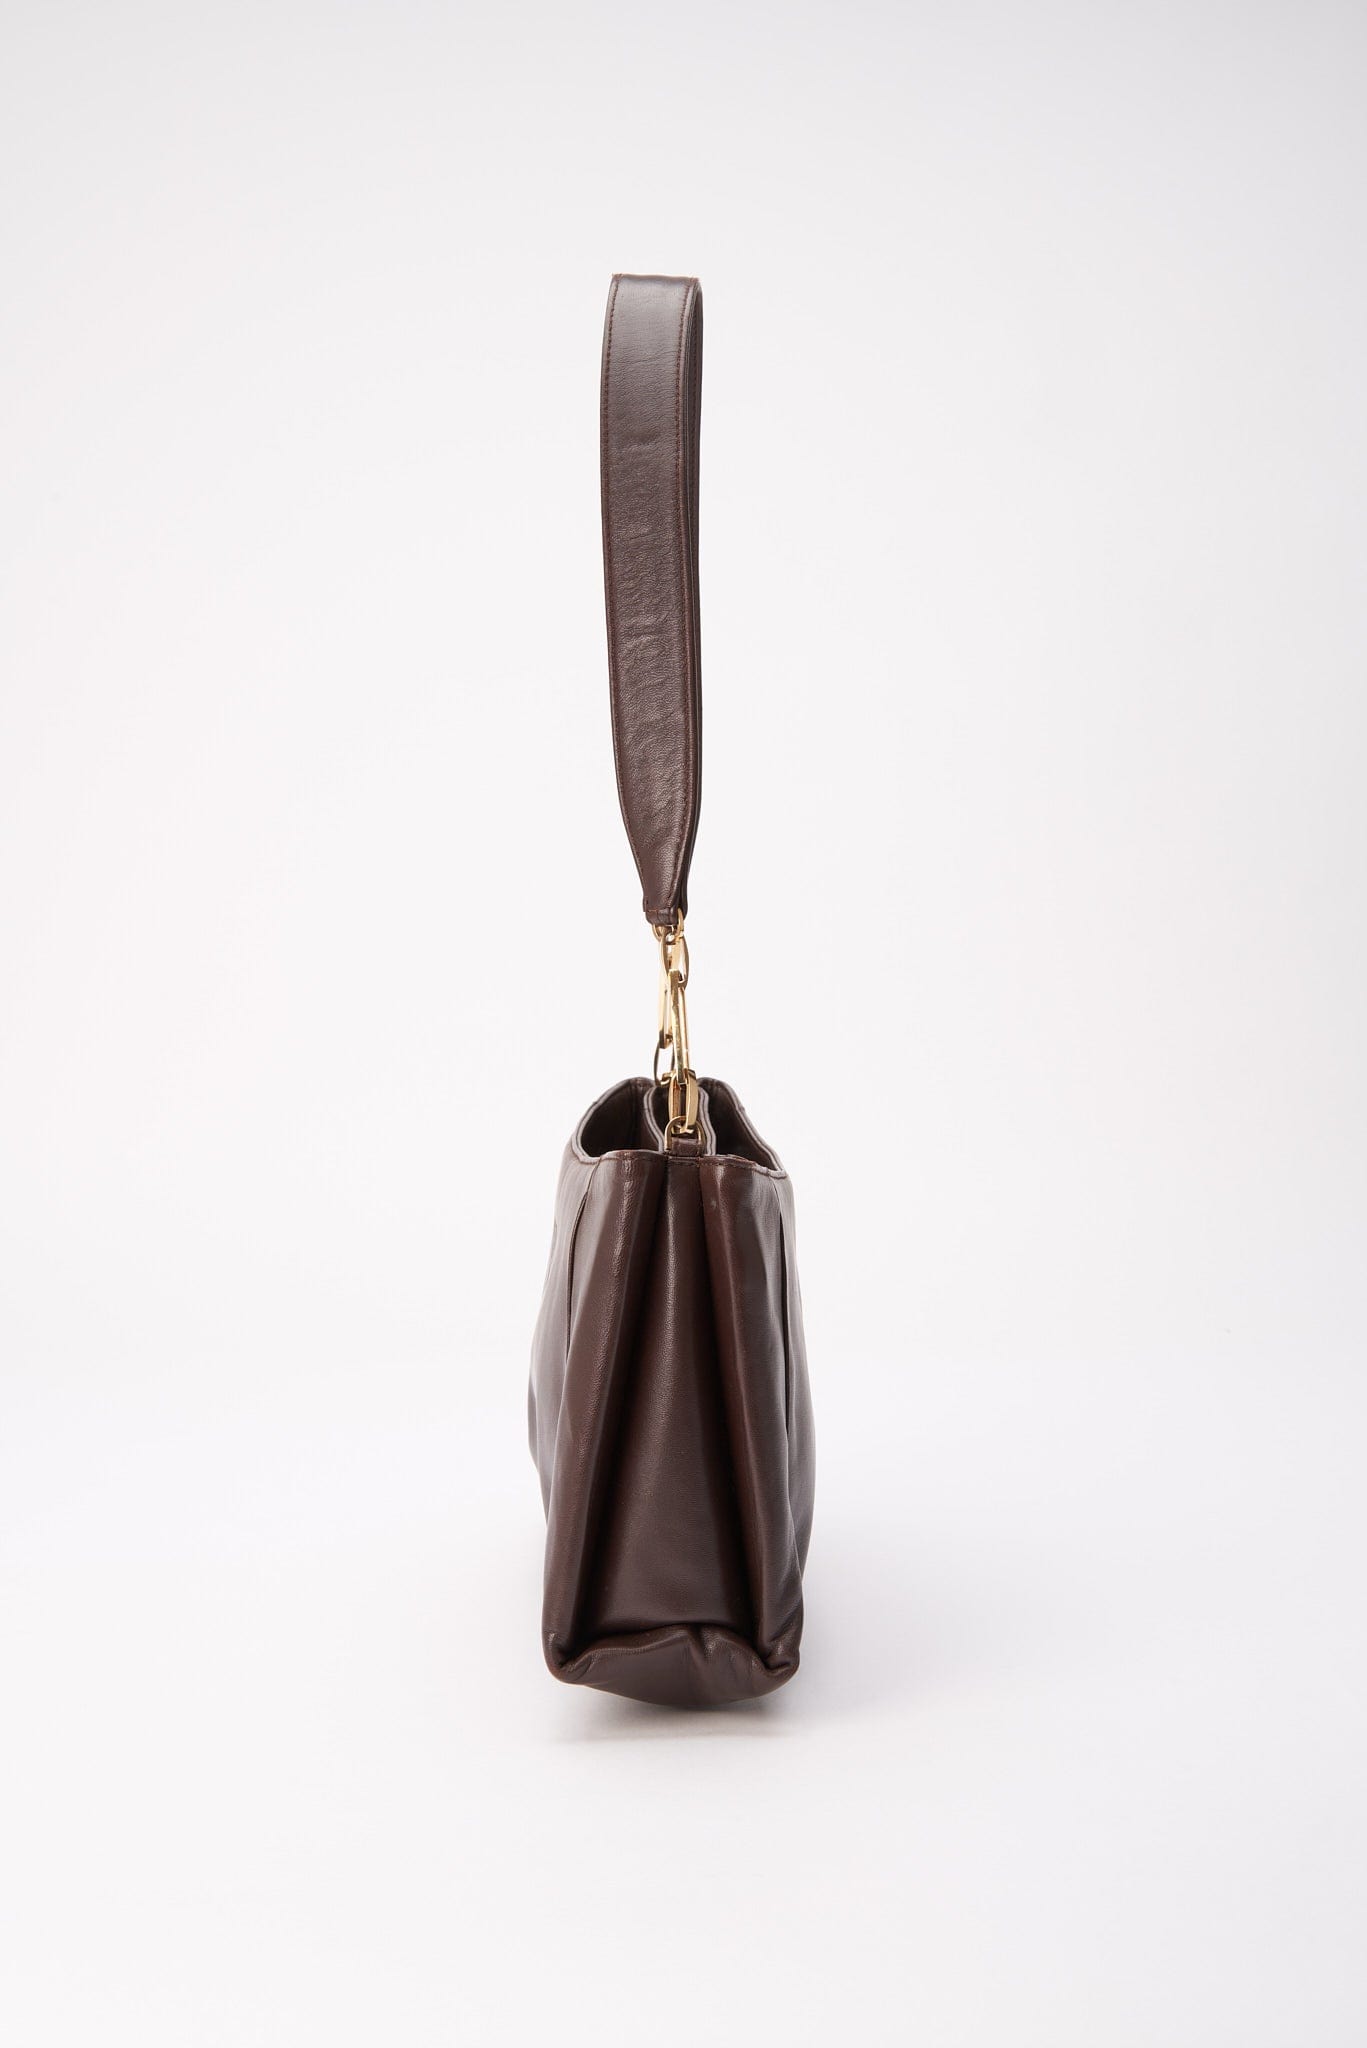 Vintage Loewe Brown Leather Shoulder Bag – The Hosta